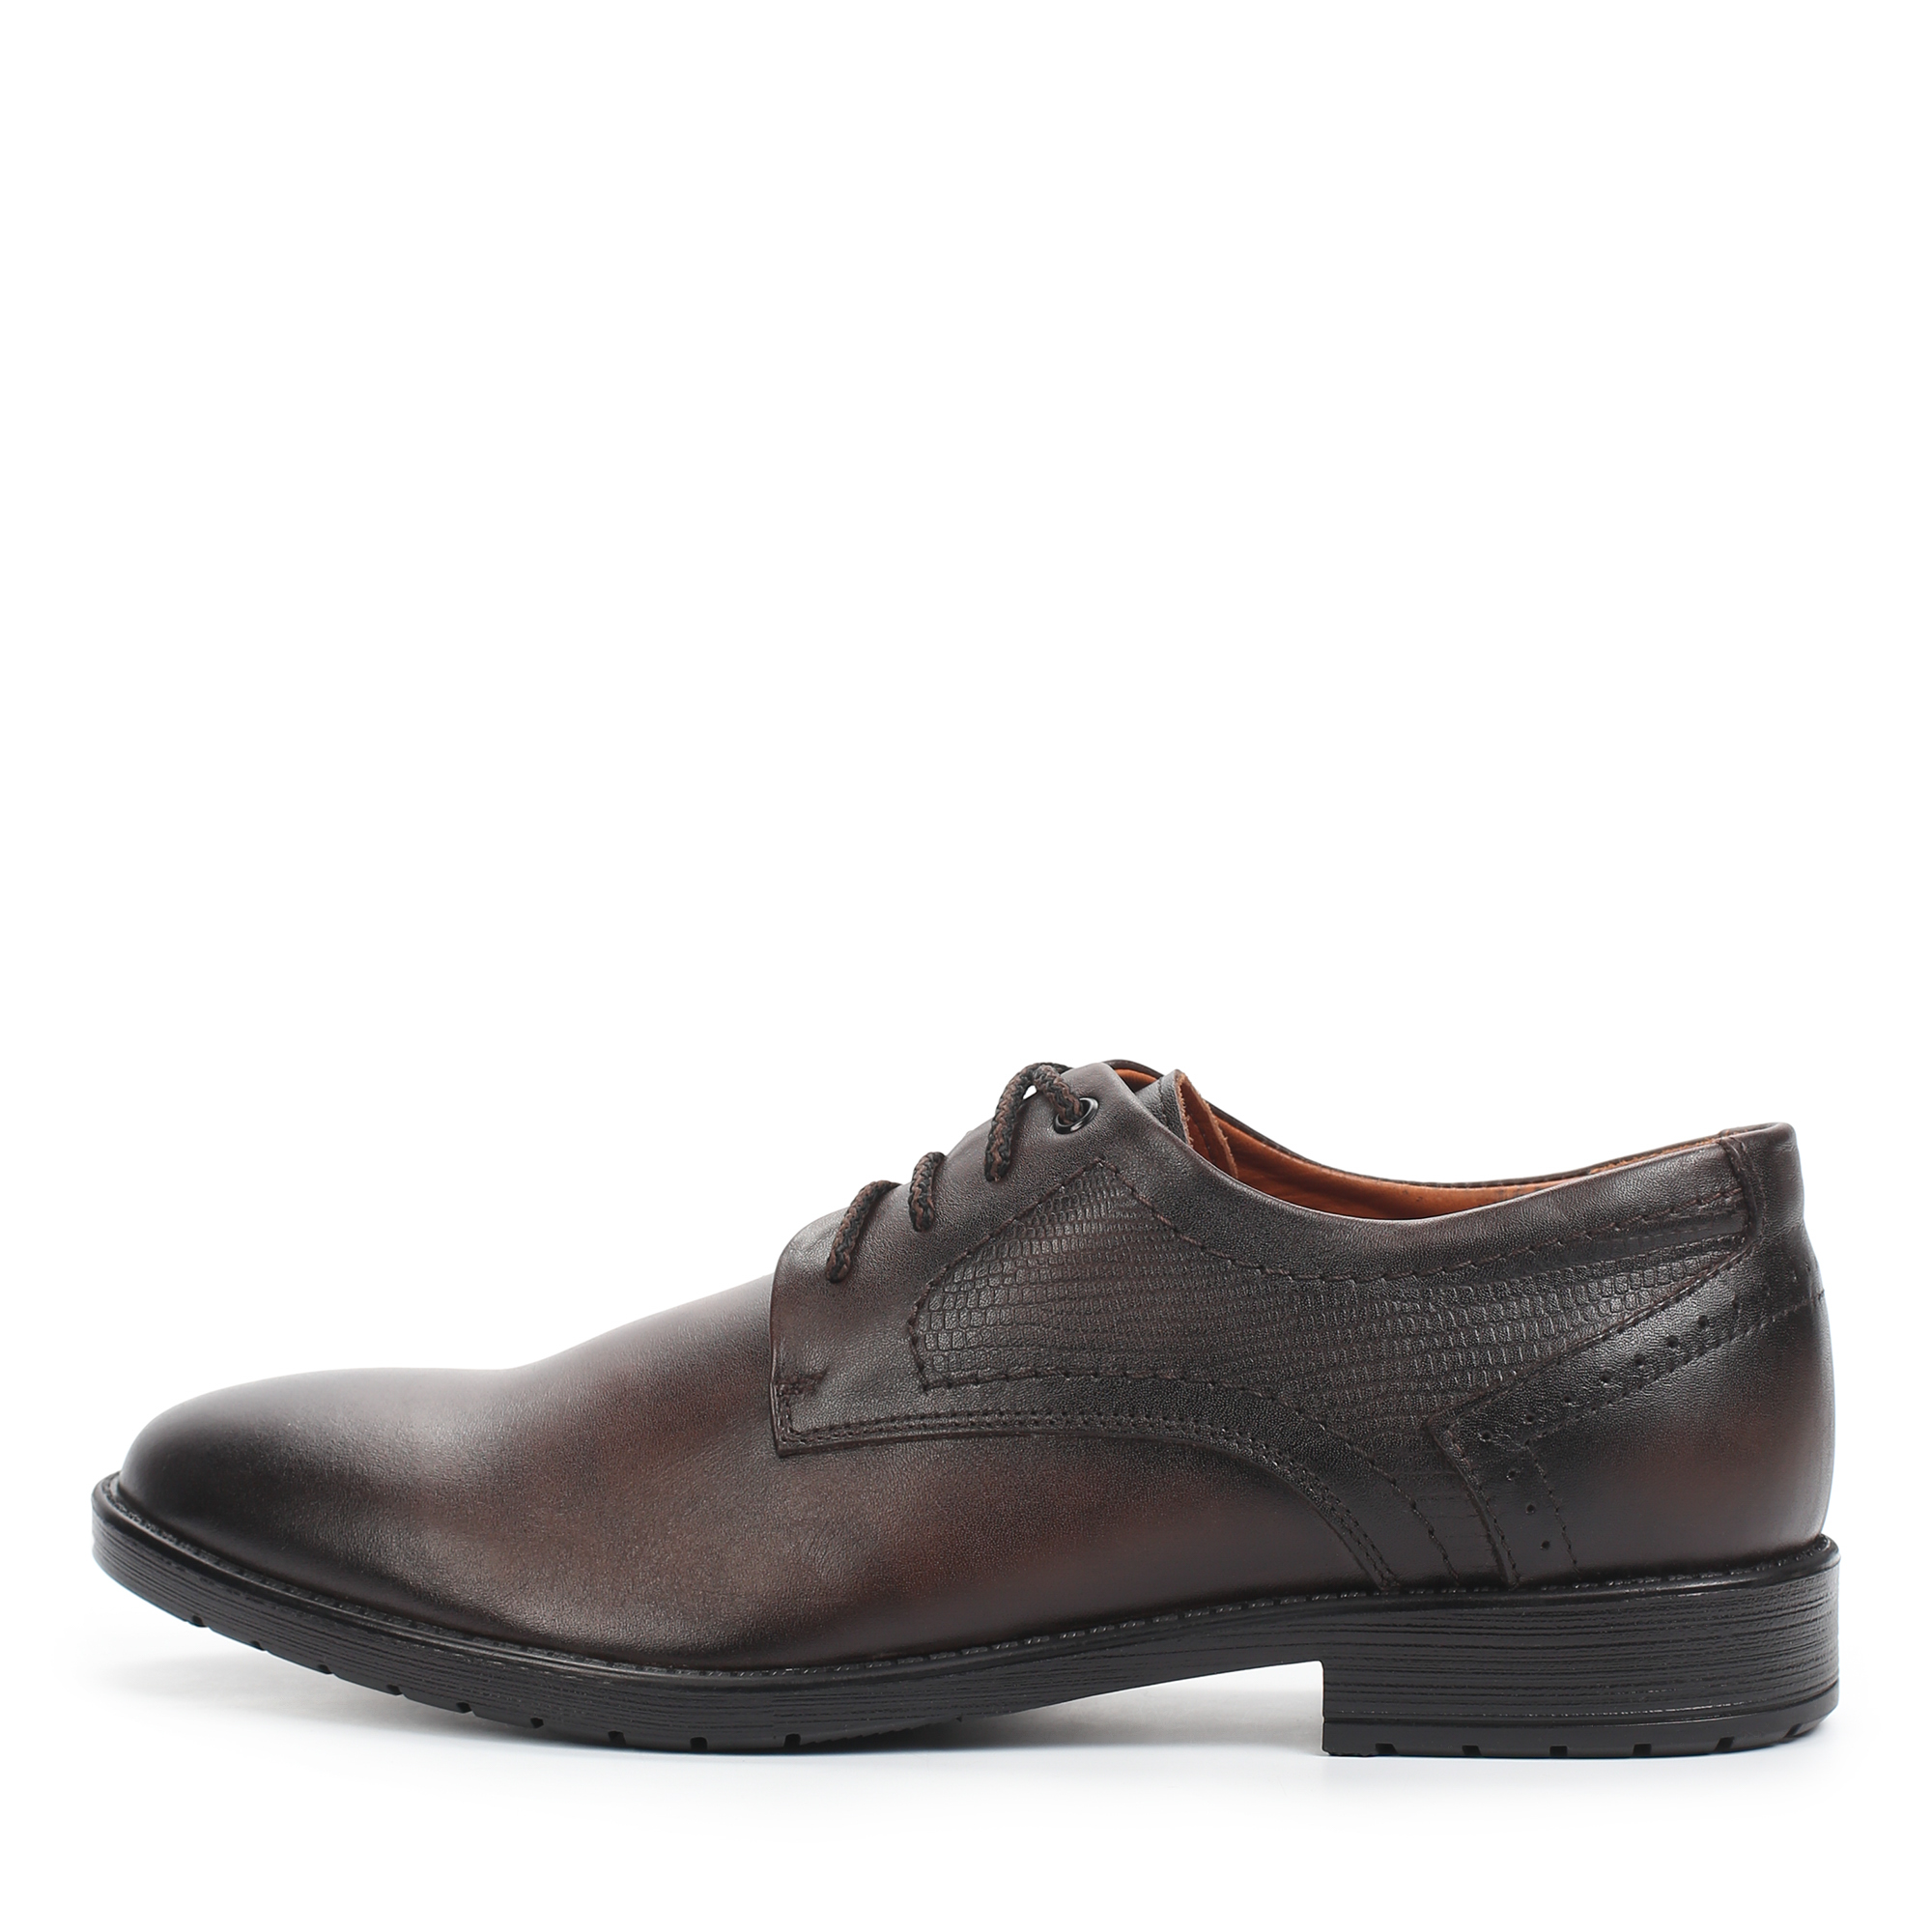 Туфли/полуботинки Thomas Munz 306-014B-1109, цвет коричневый, размер 42